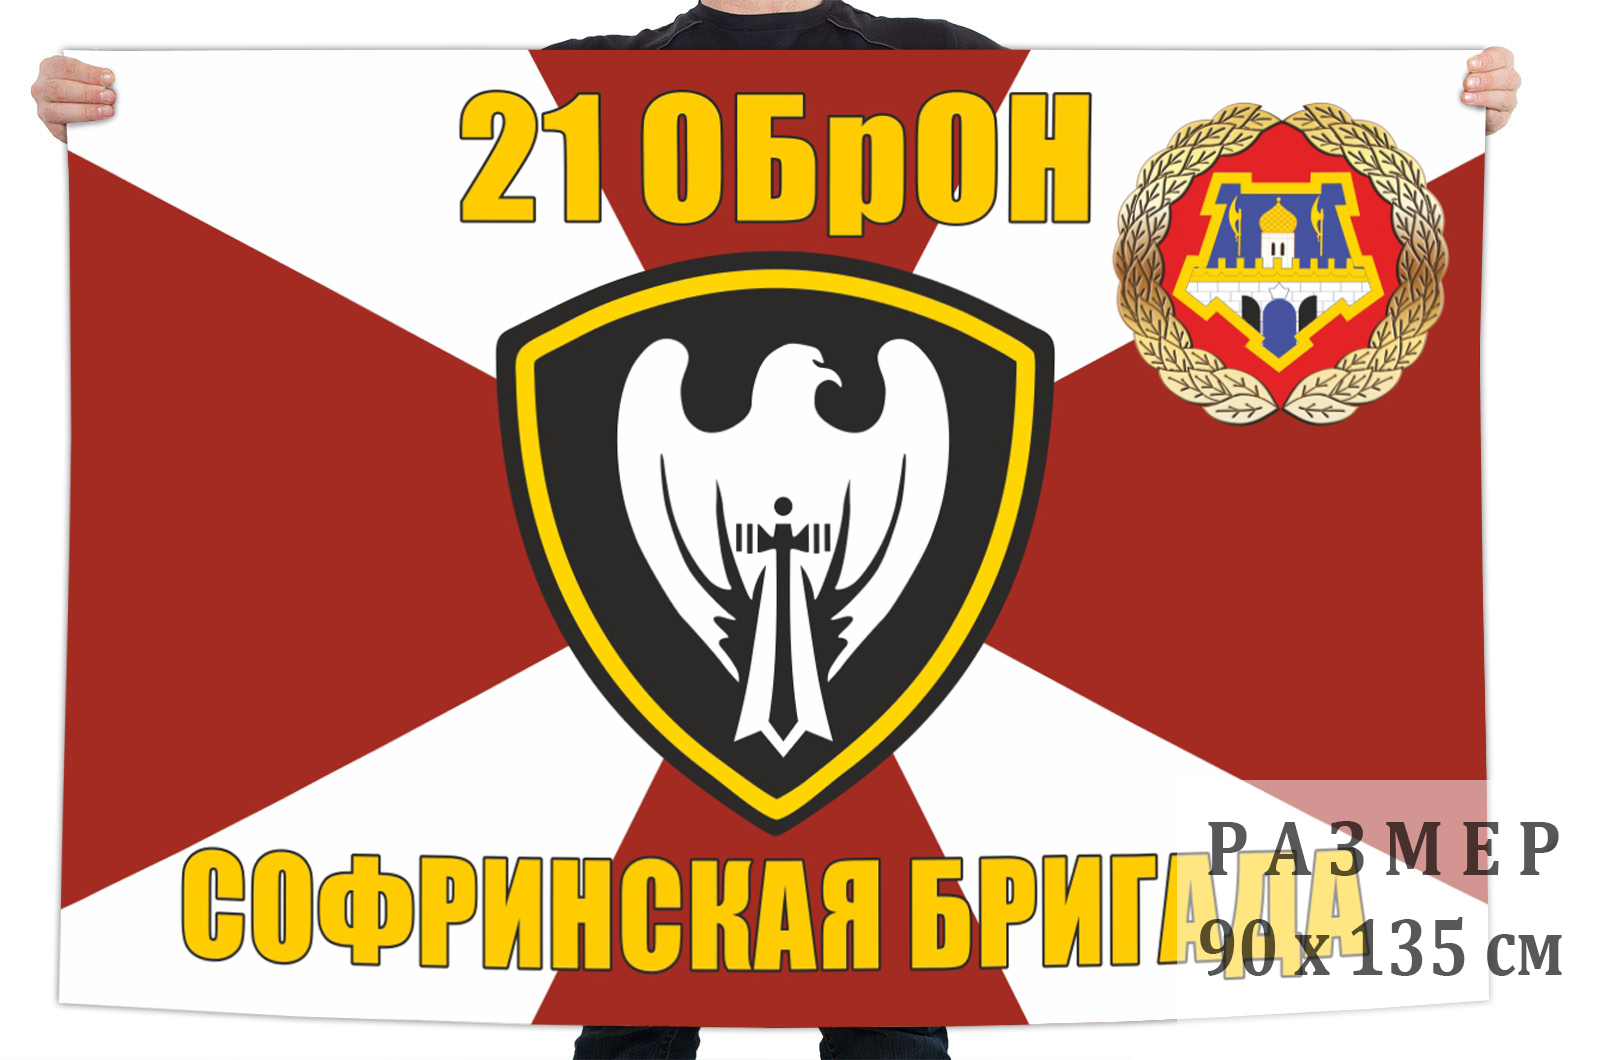 Софрино 21 ОБРОН ВВ МВД флаг